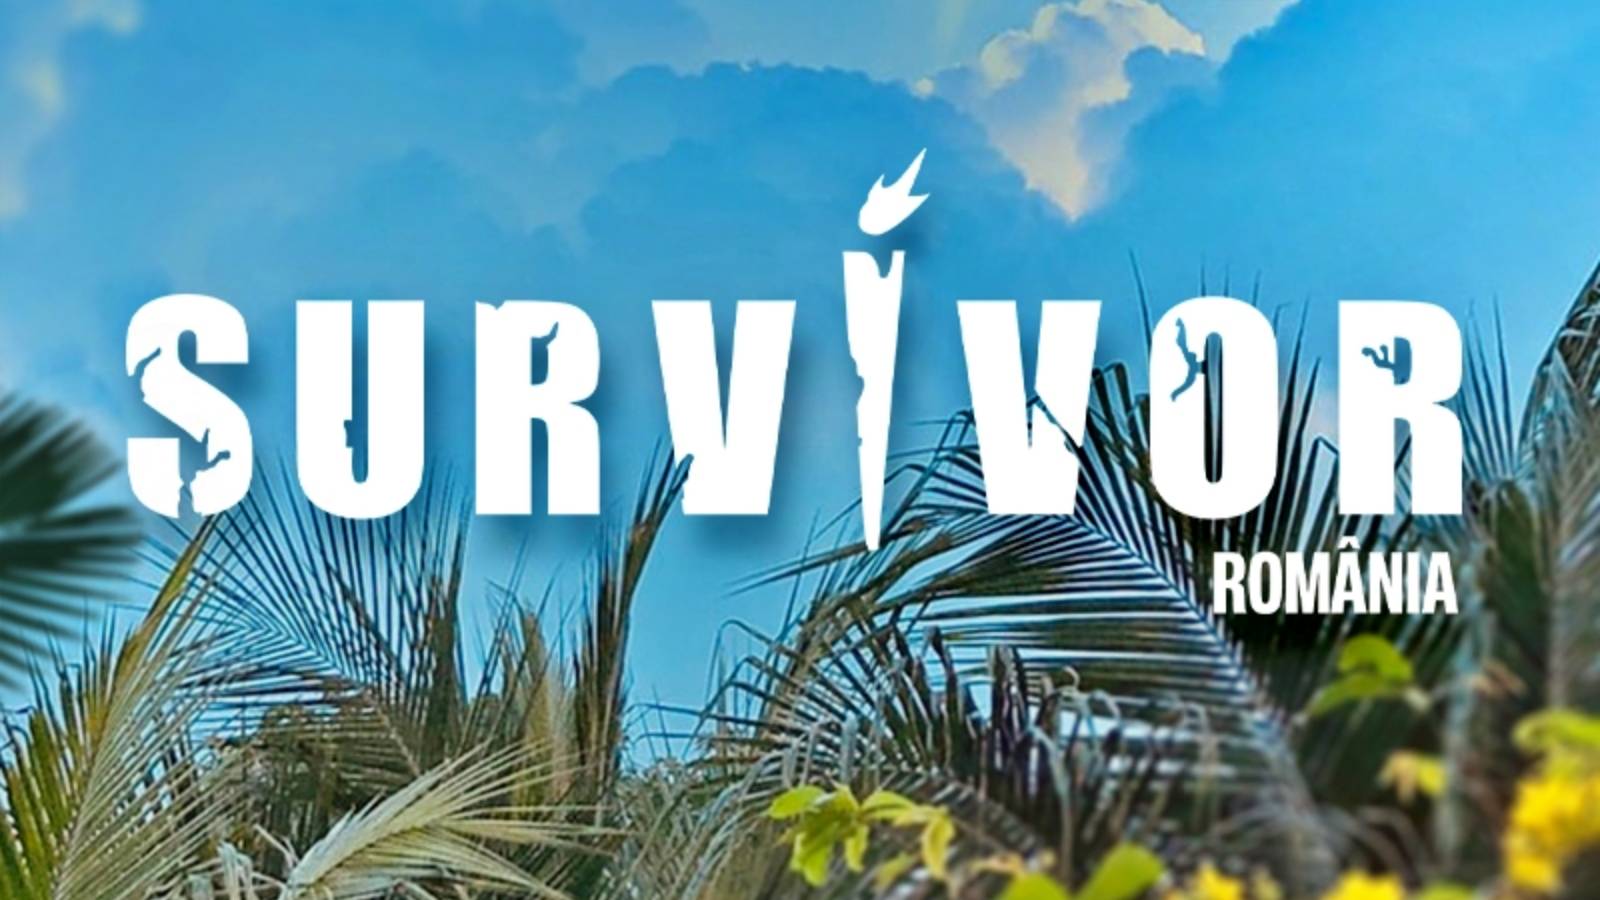 Offizielle Ankündigung von Survivor All Stars LAST MOMENT PRO TV-Konflikt von enormen Ausmaßen